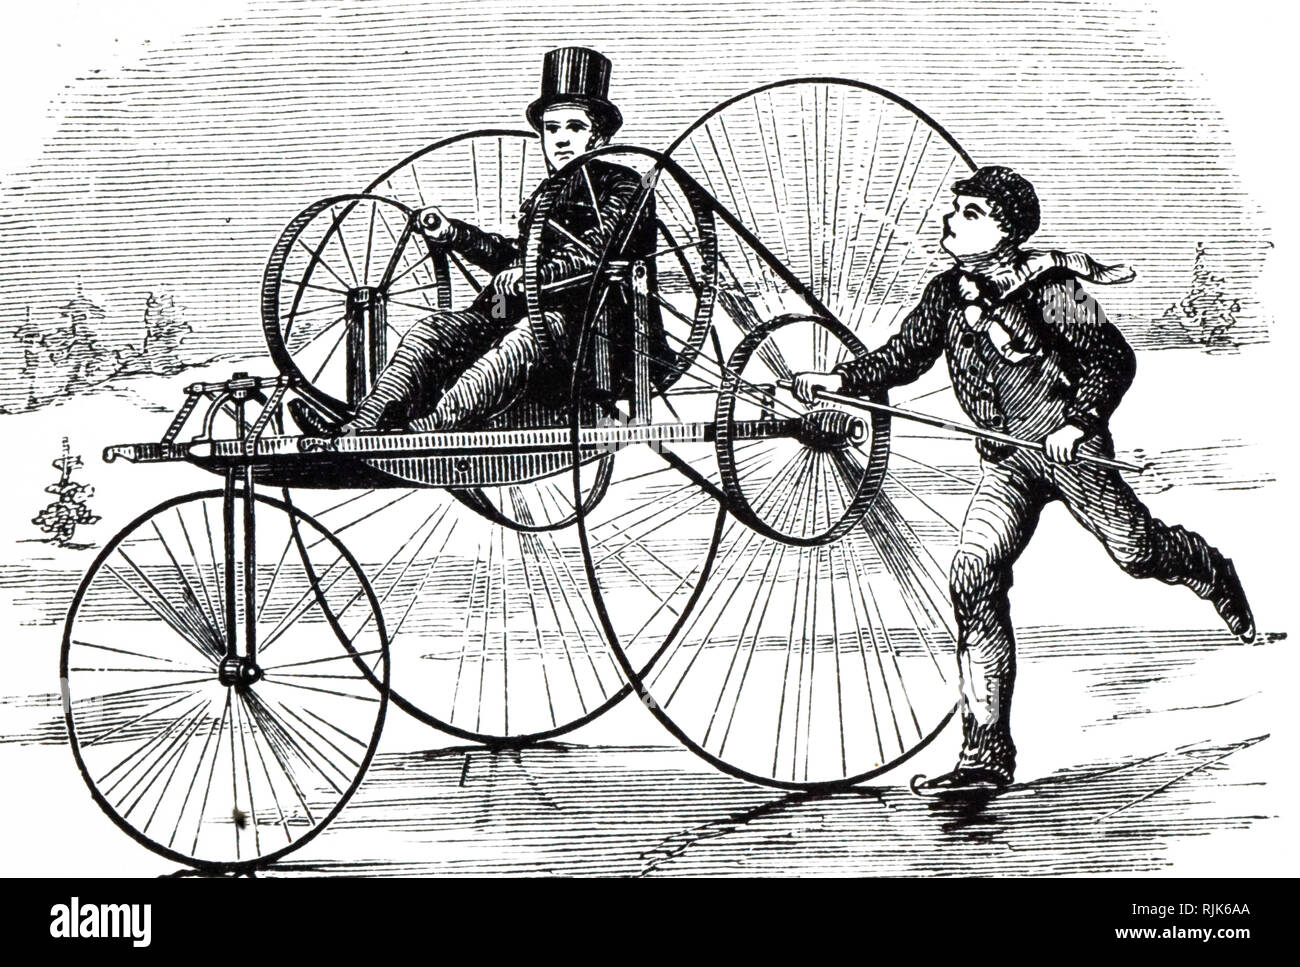 Une gravure représentant un tricycle par George Glasgow : le véhicule était piloté par pieds du passager et alimenté par les mains. En date du 19e siècle Banque D'Images